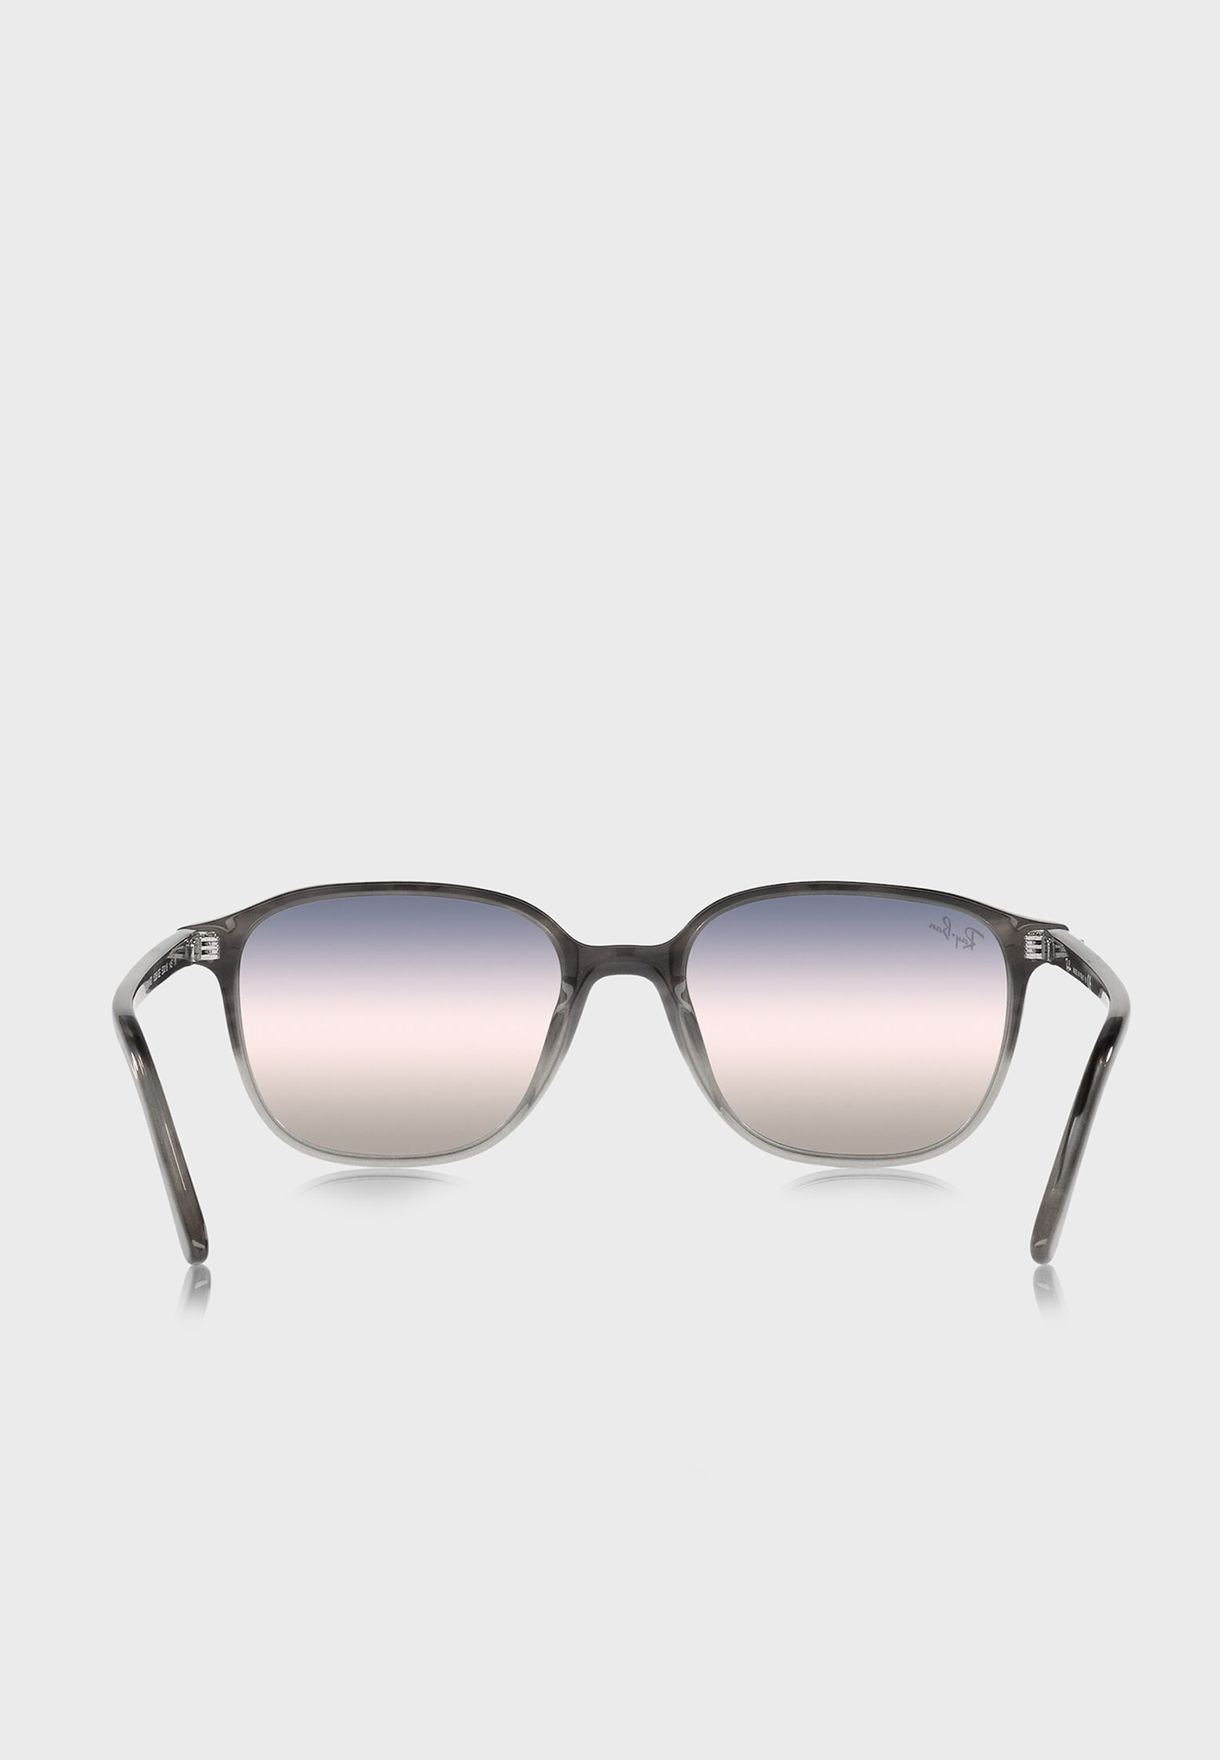 نظارة شمسية كلوب ماستر